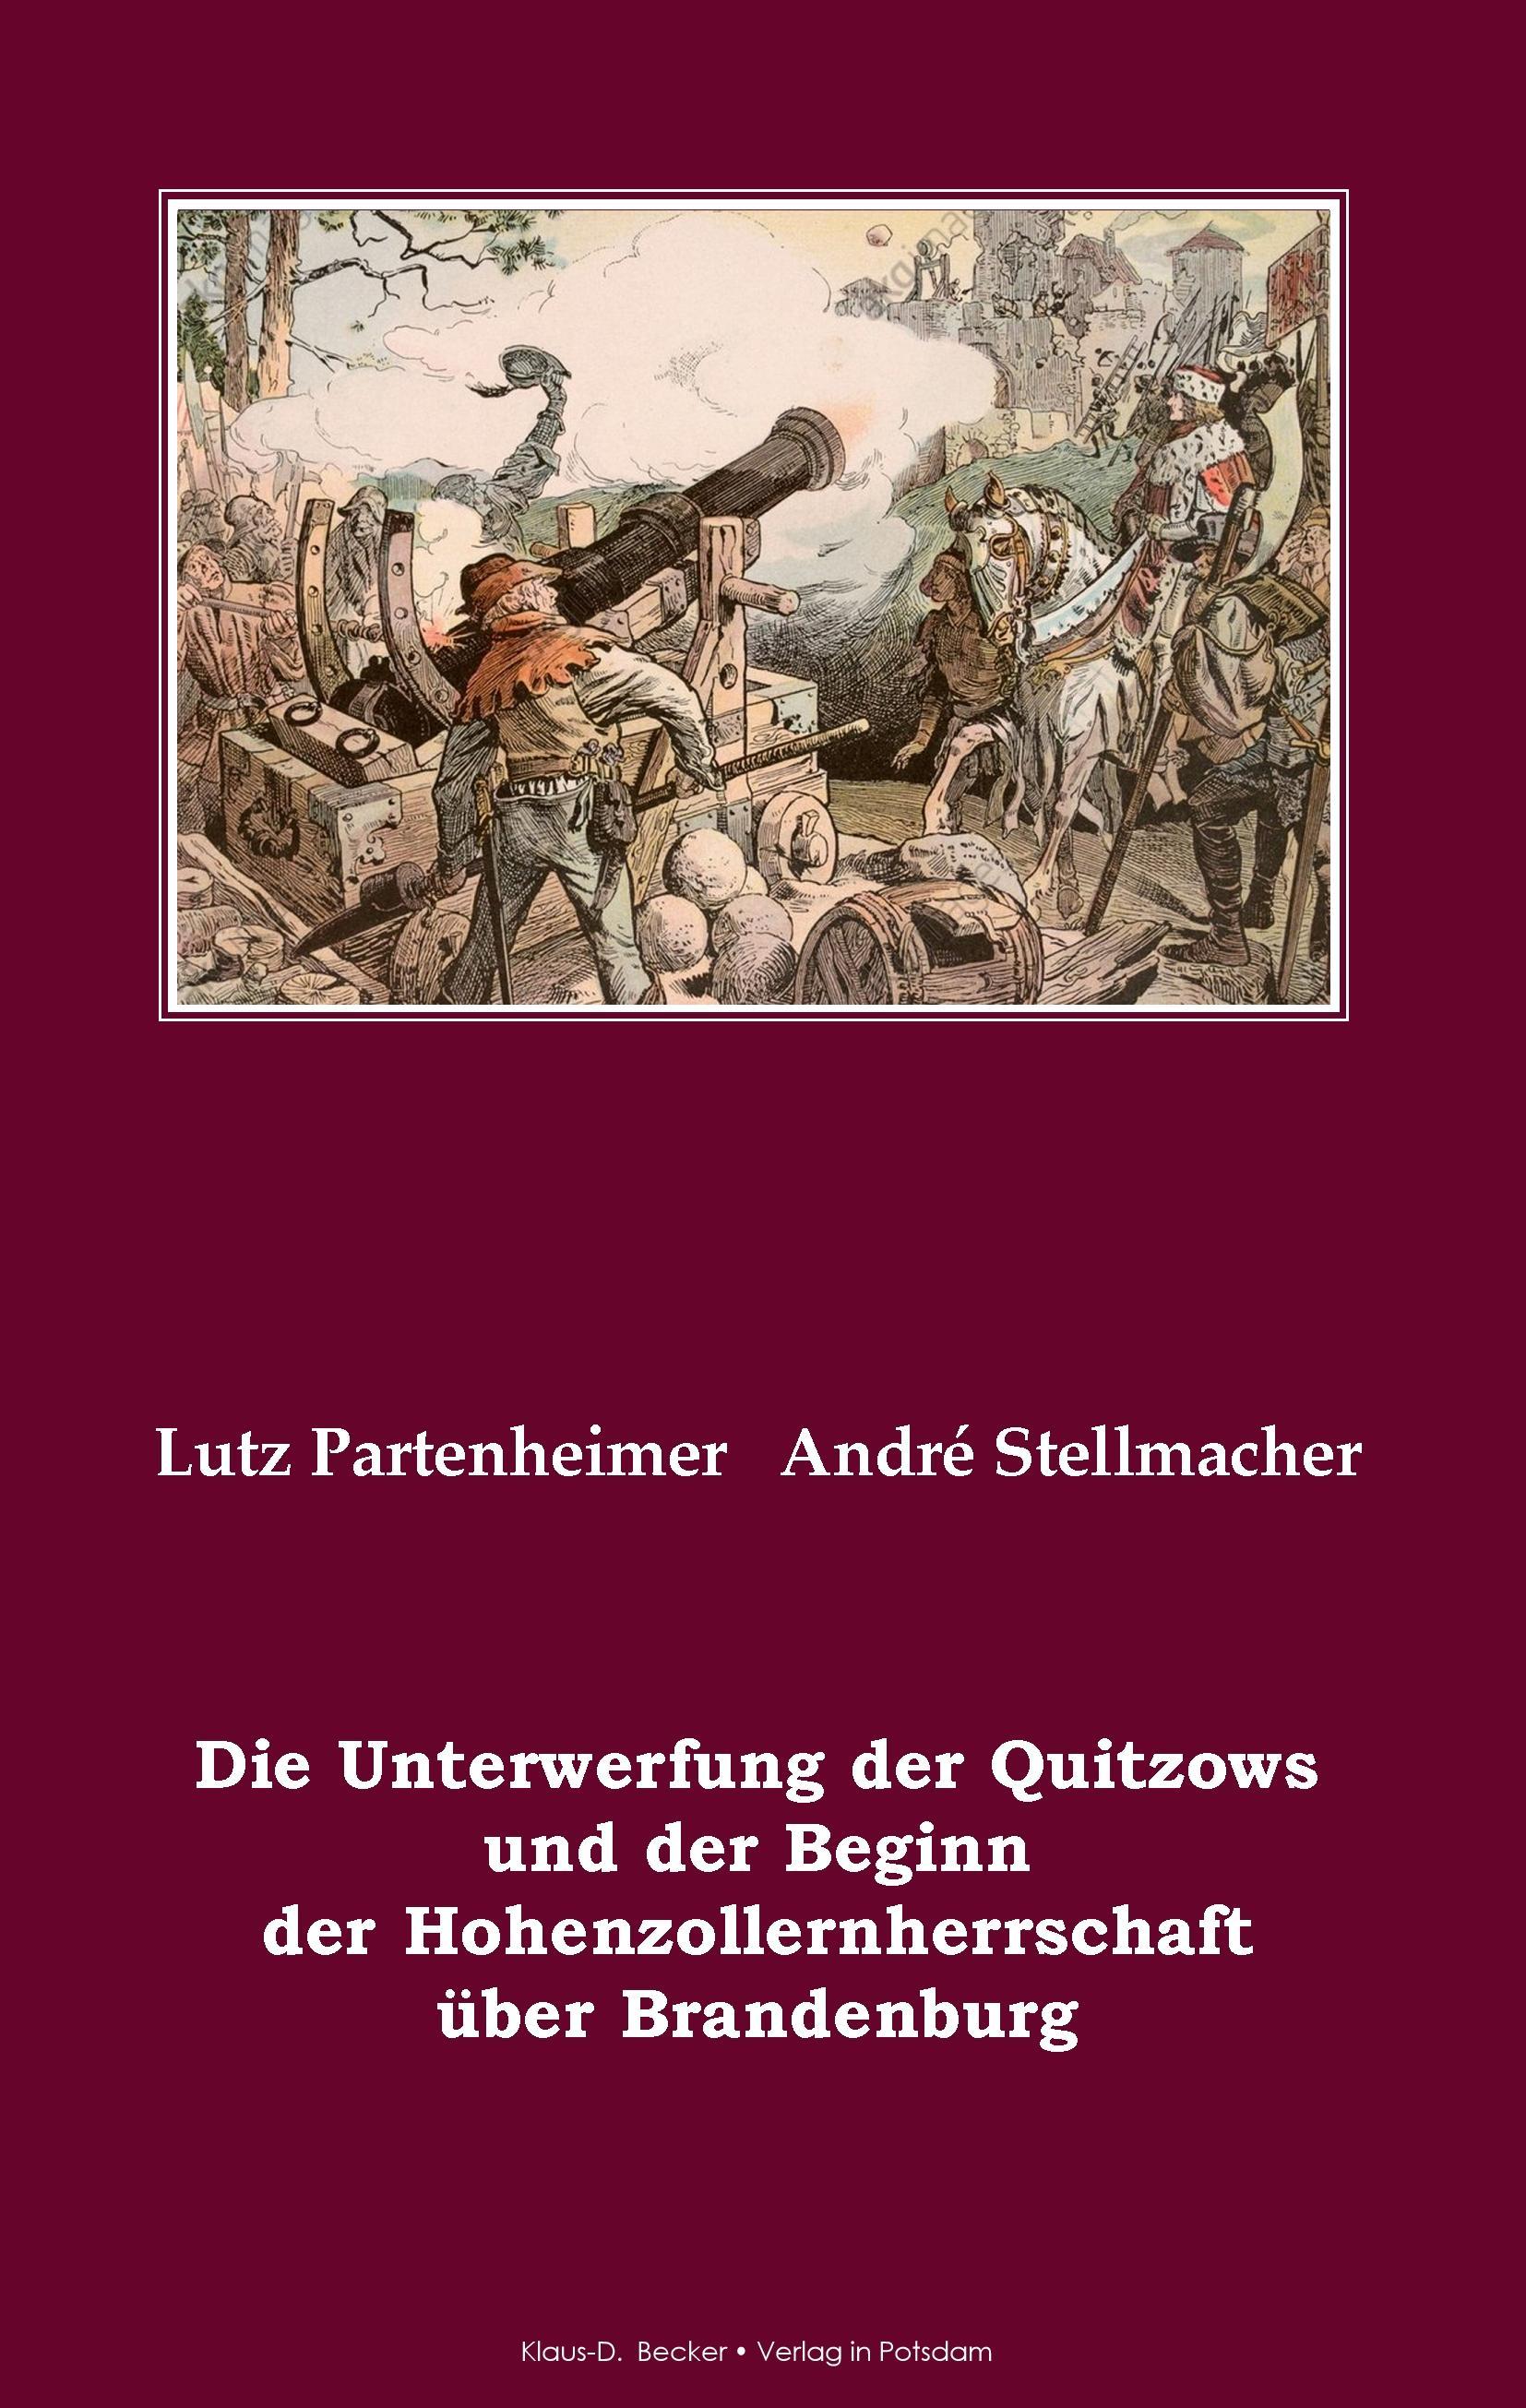 Die Unterwerfung der Quitzows und der Beginn der Hohenzollernherrschaft über Brandenburg - Partenheimer, Lutz|Stellmacher, André